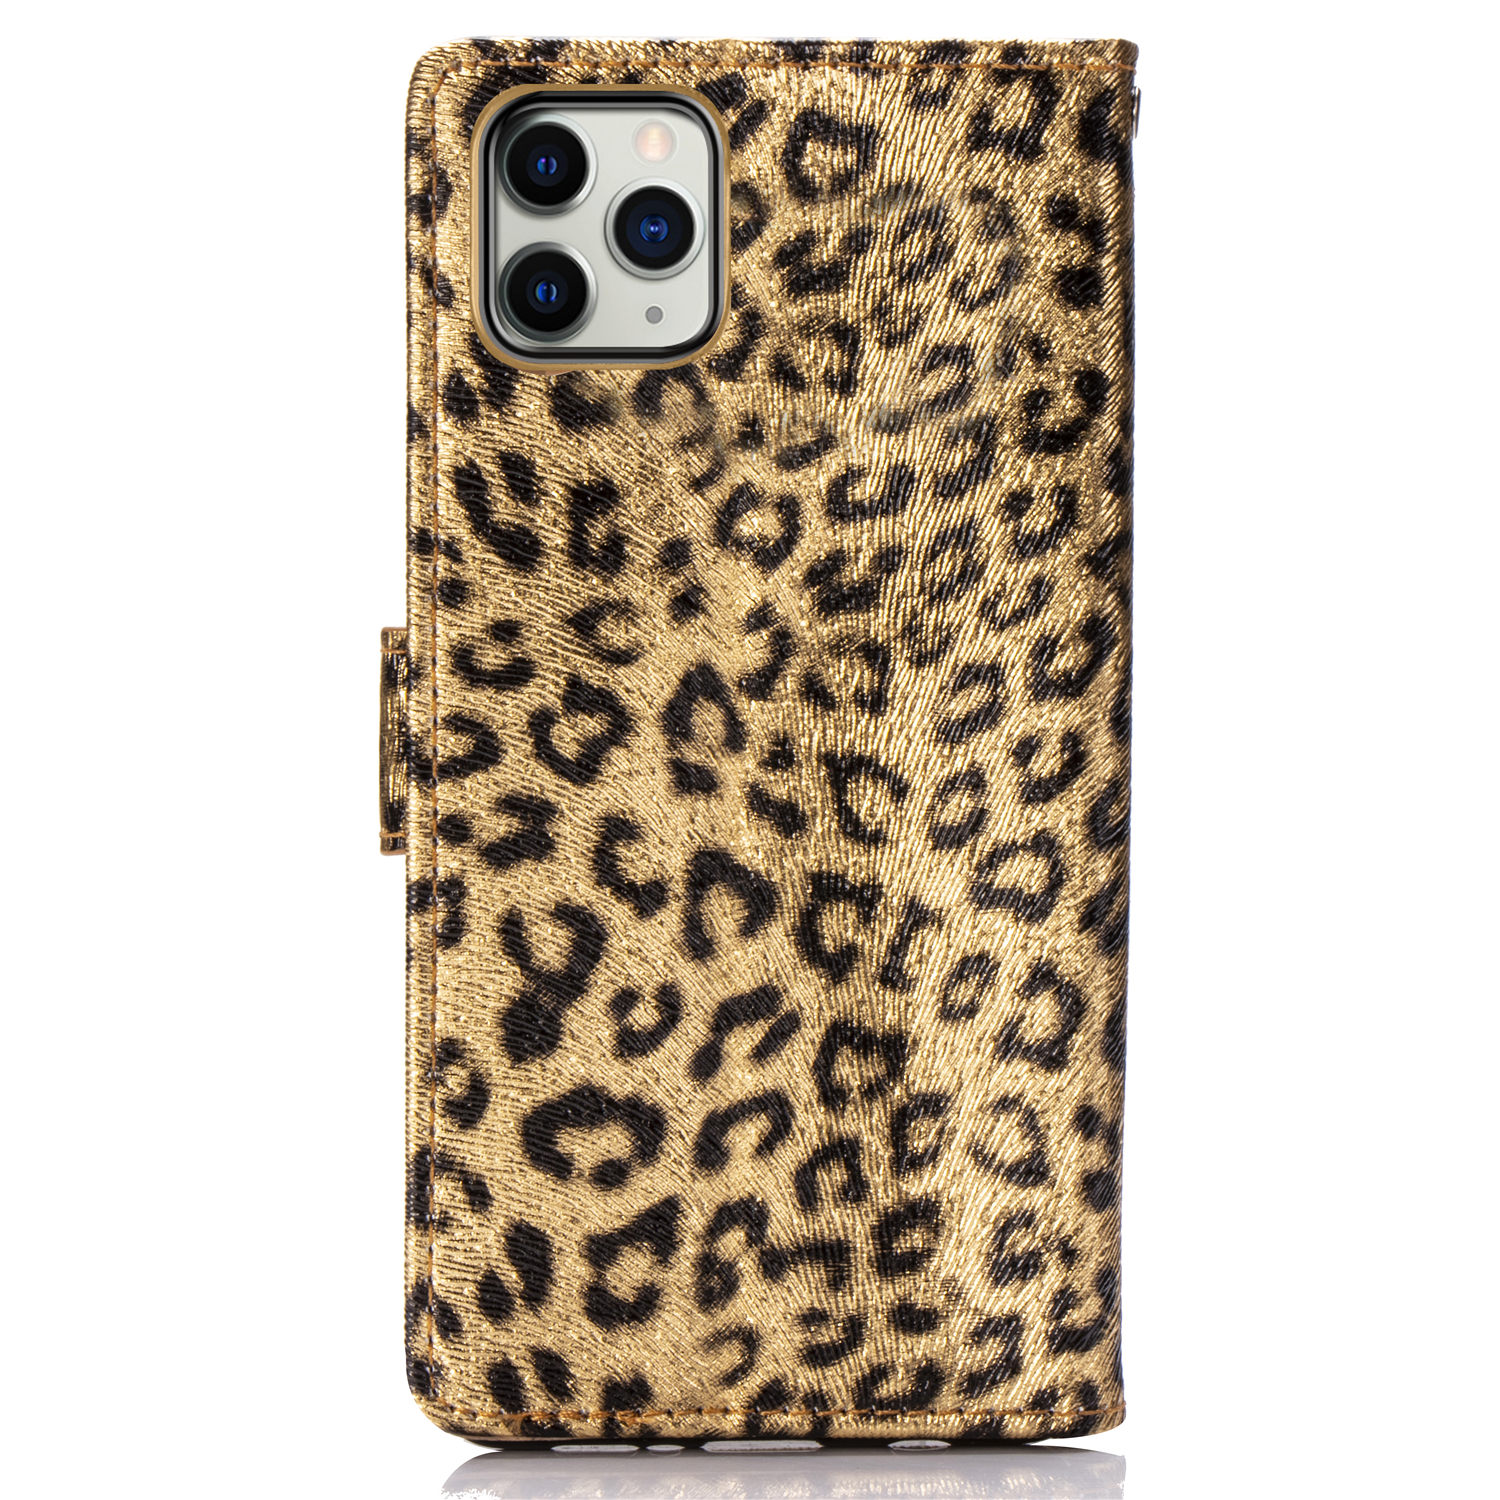 Leopard läderfodral med ställ/kortplats, iPhone 11 Pro Max, guld